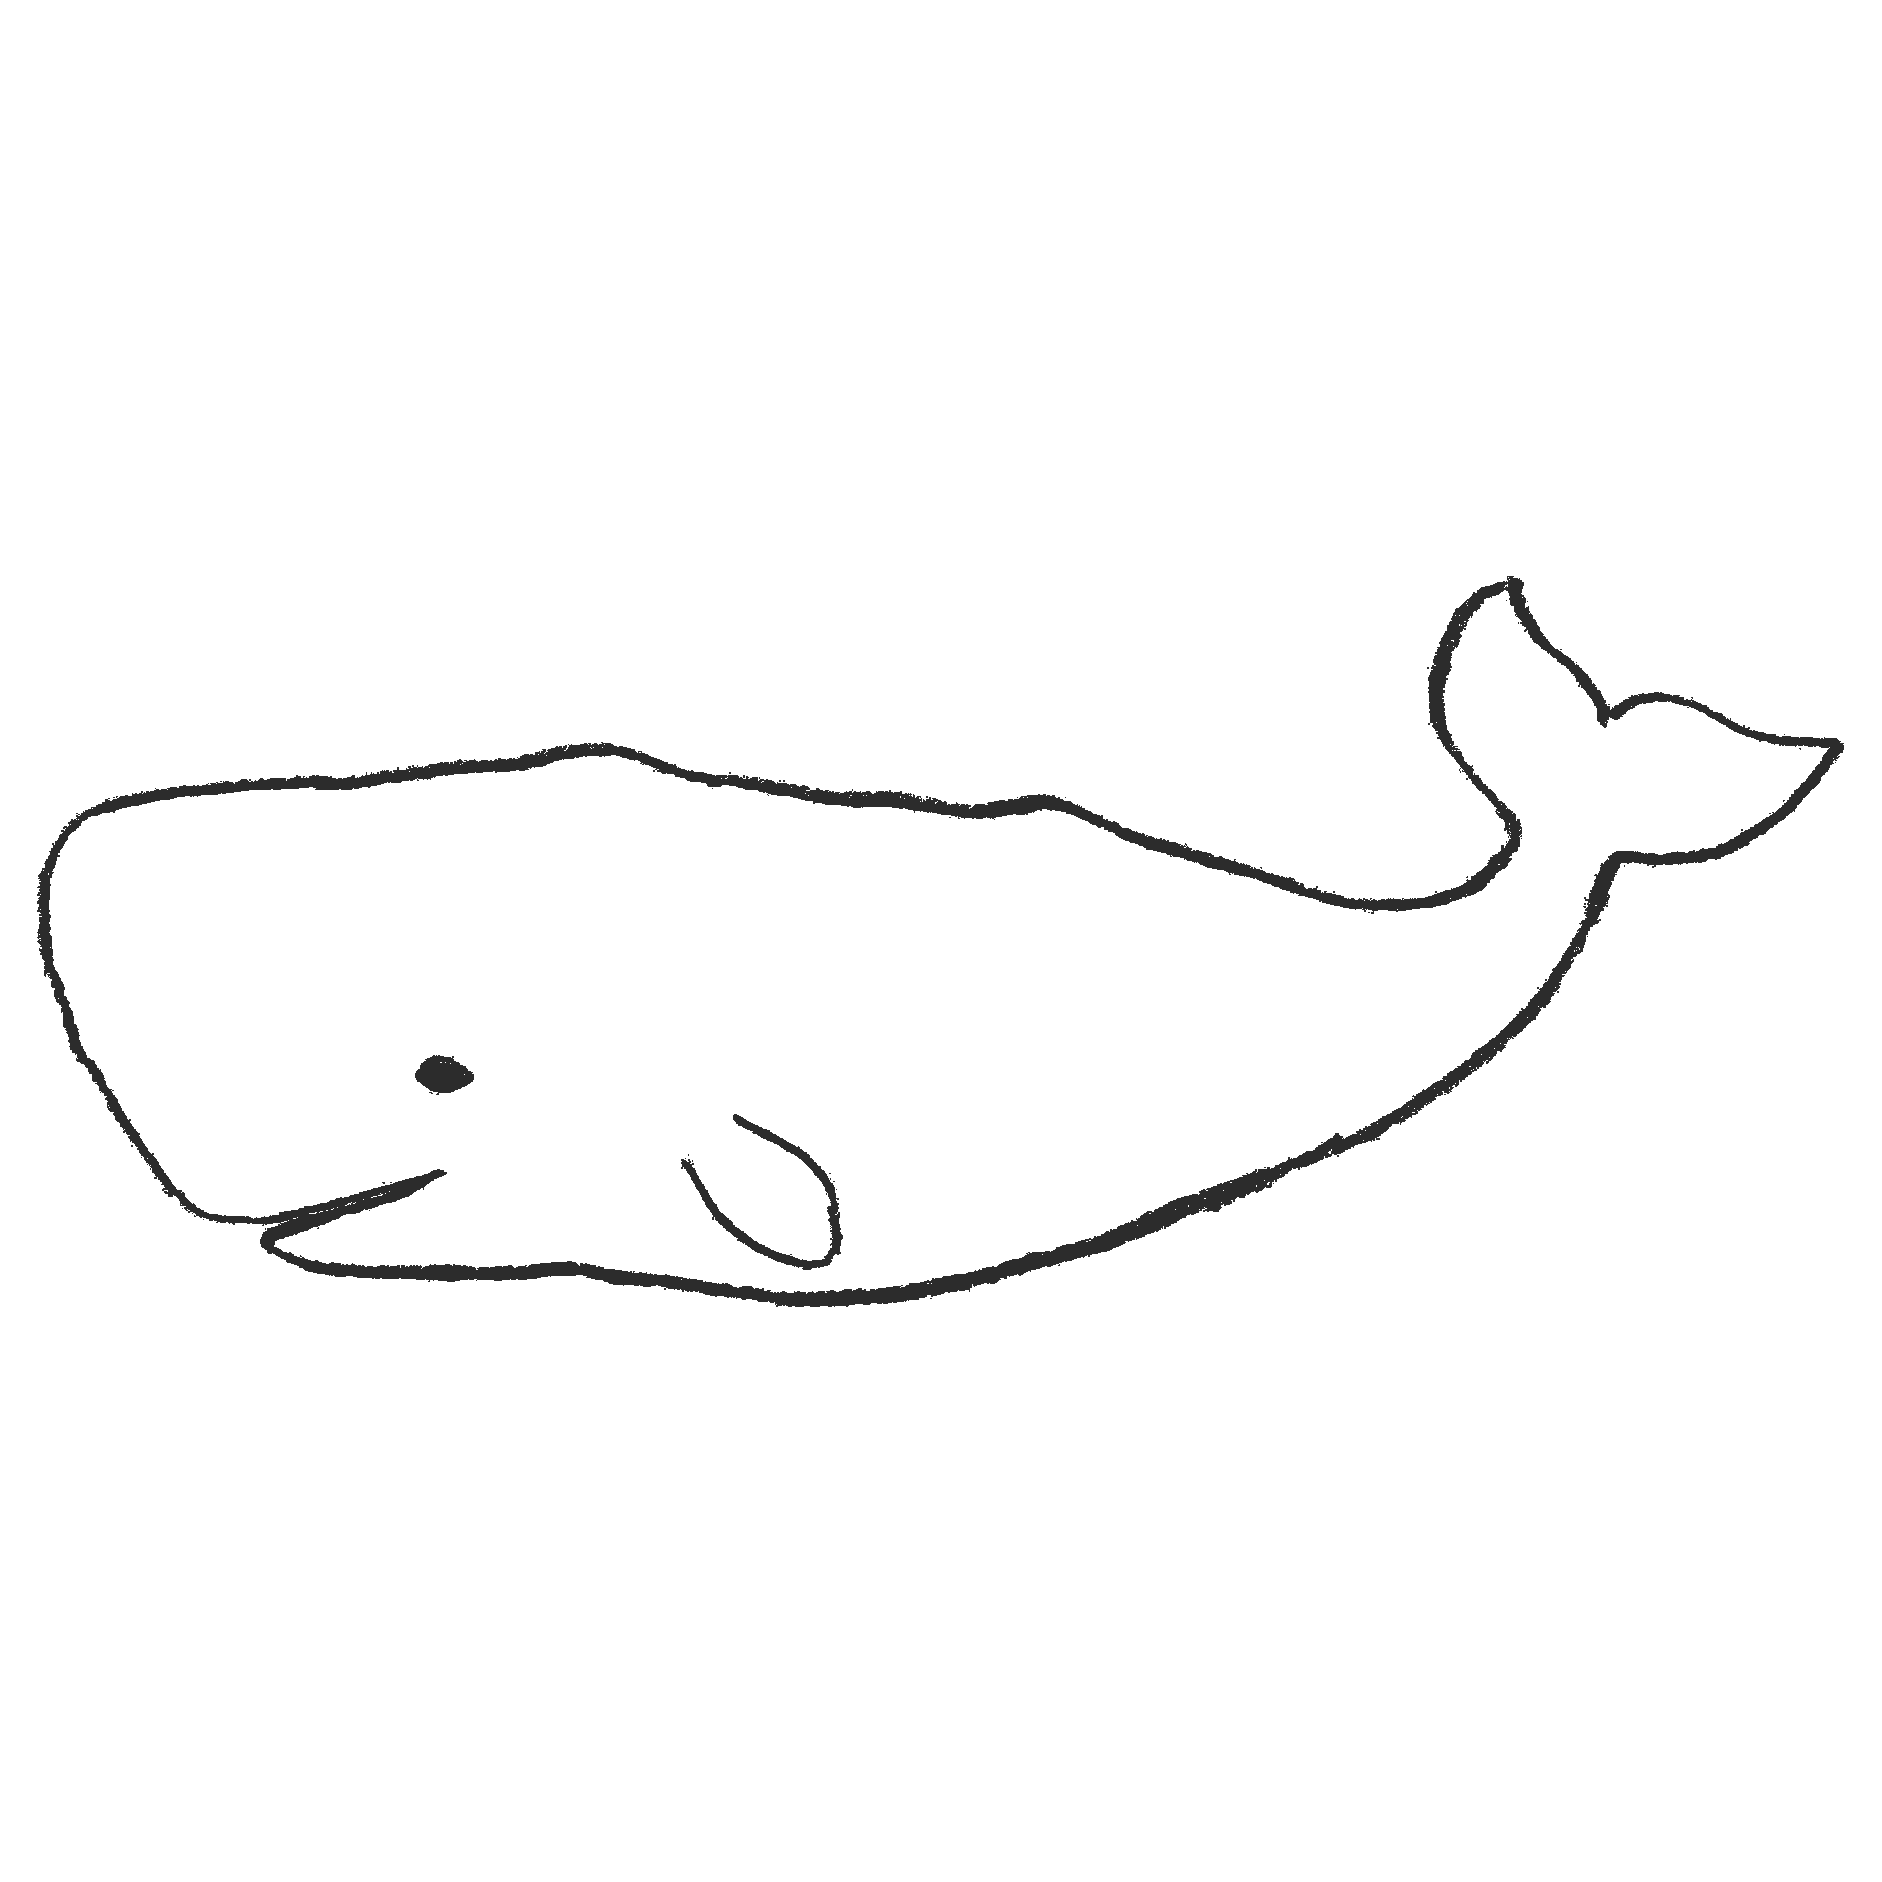 マッコウクジラのイラストフリー素材